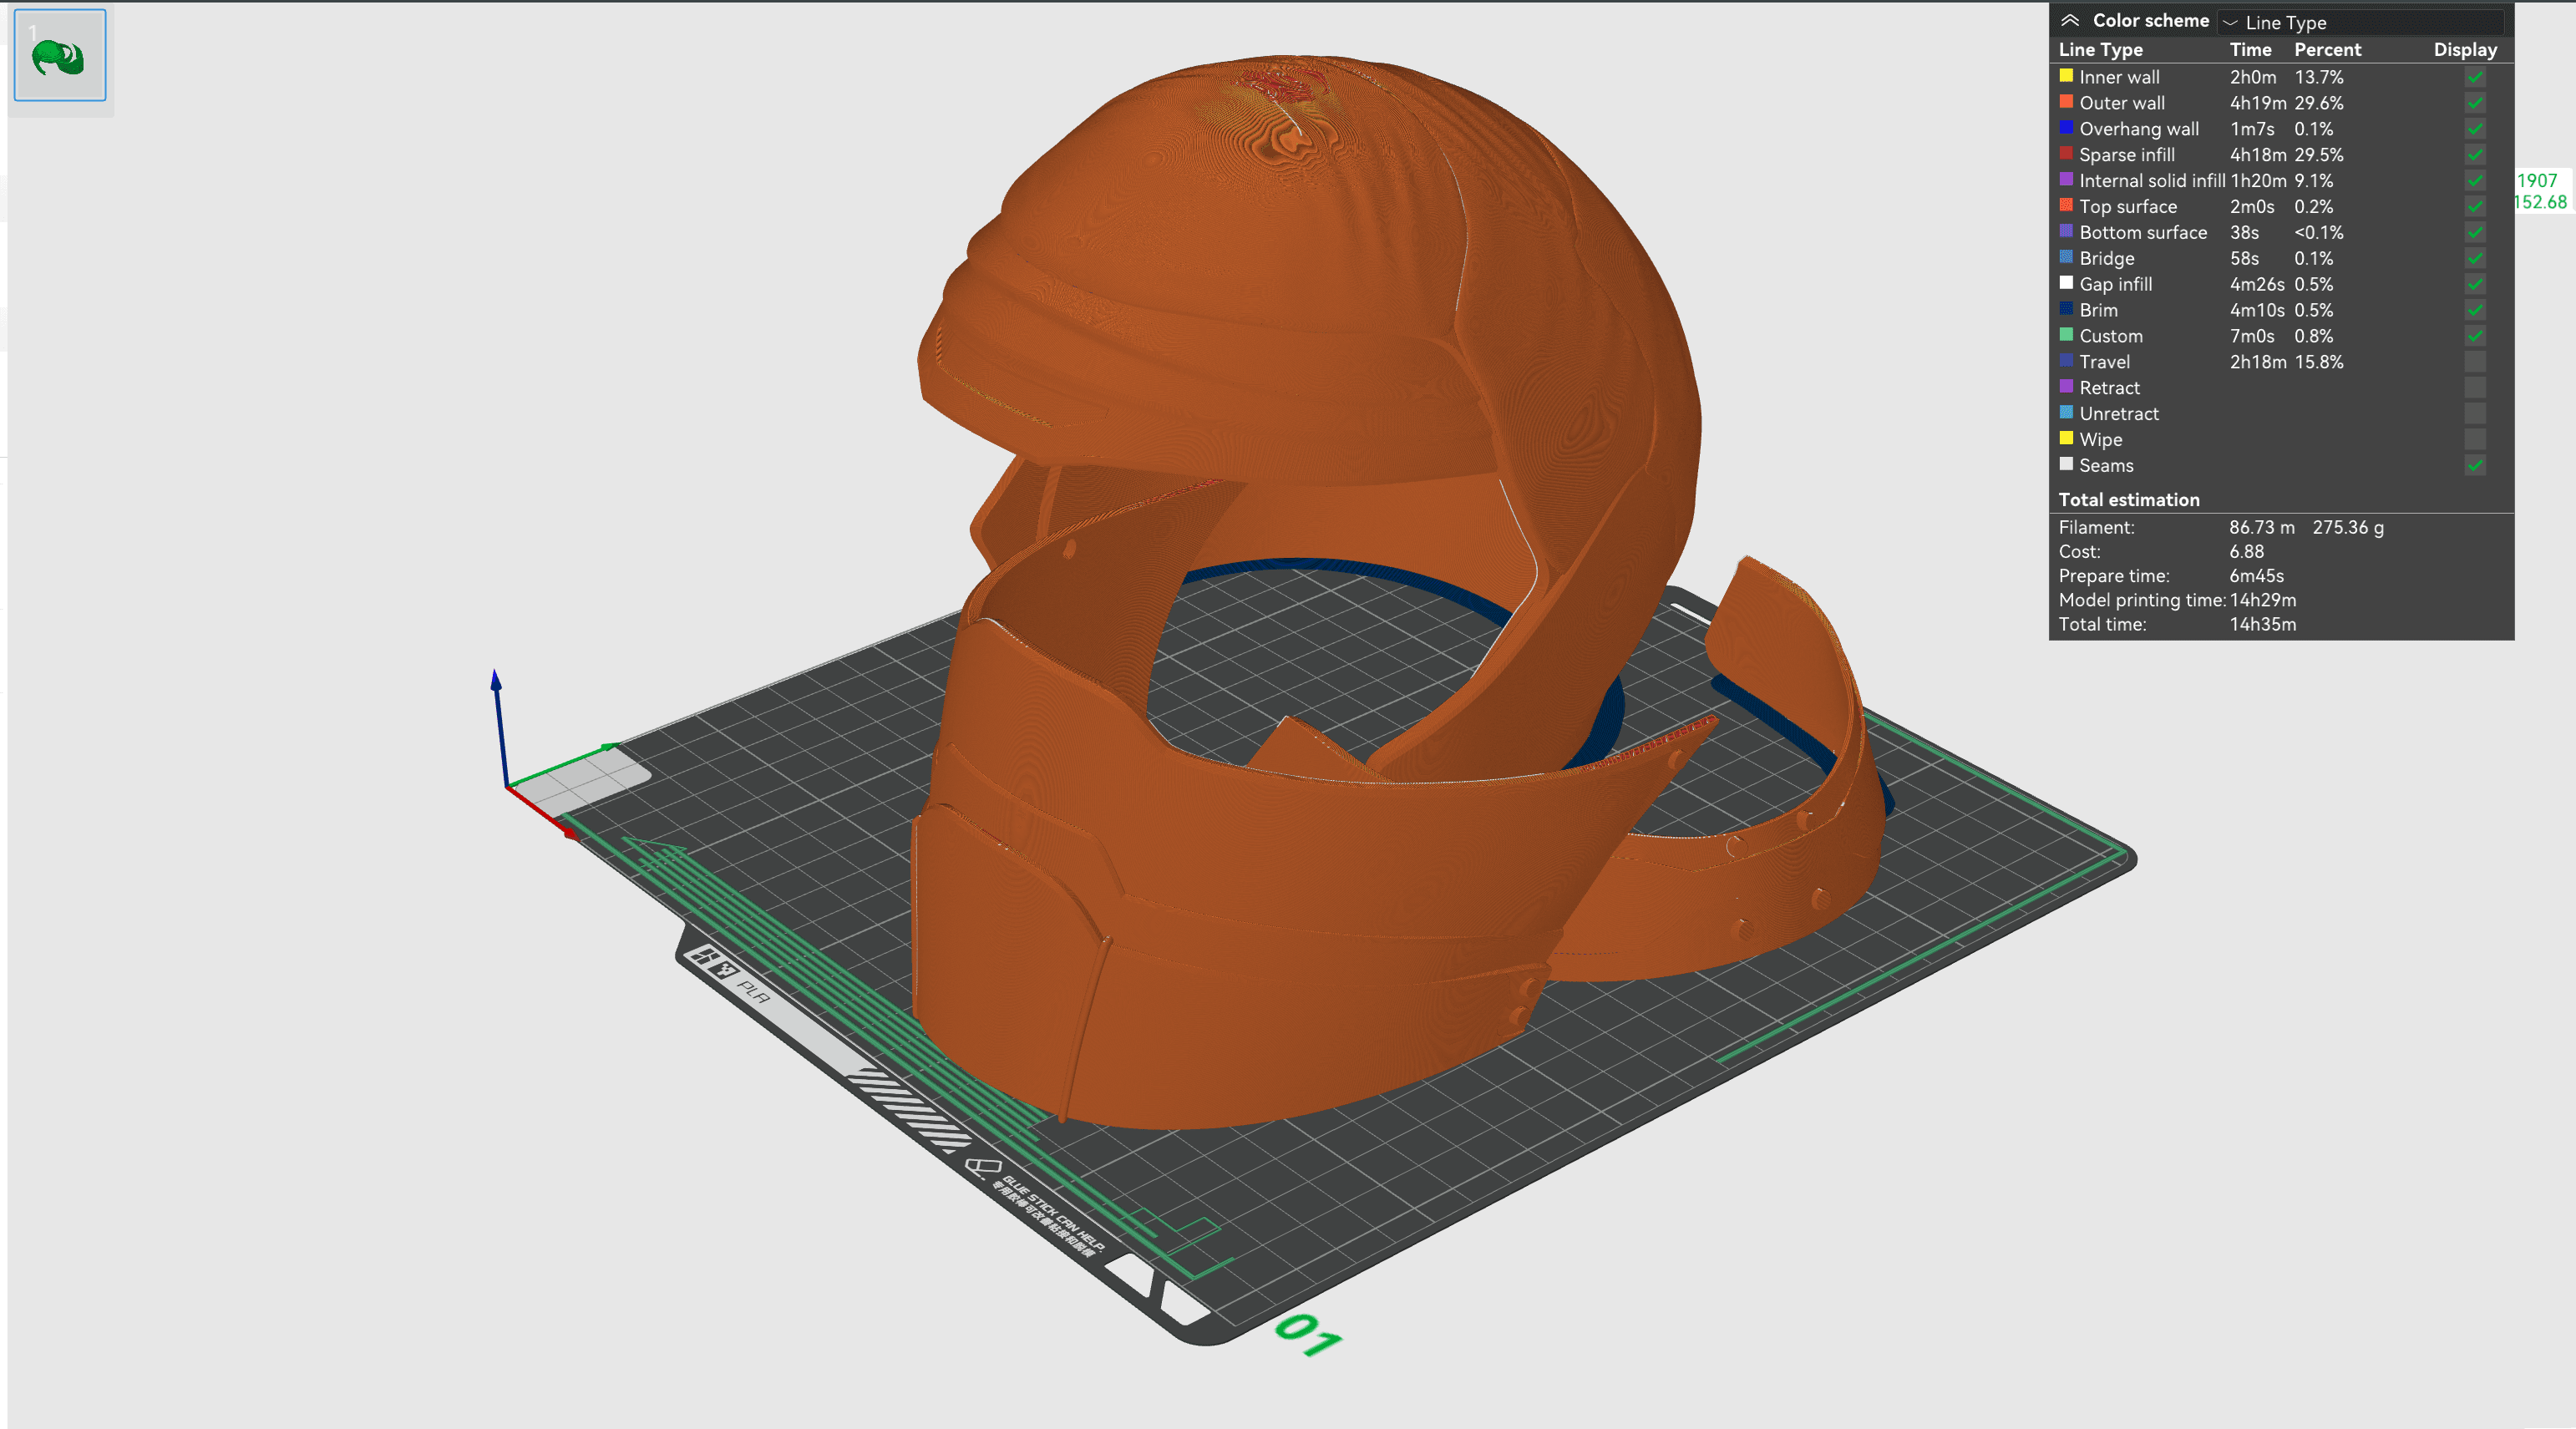 Fremen Helmet Dune 3d model